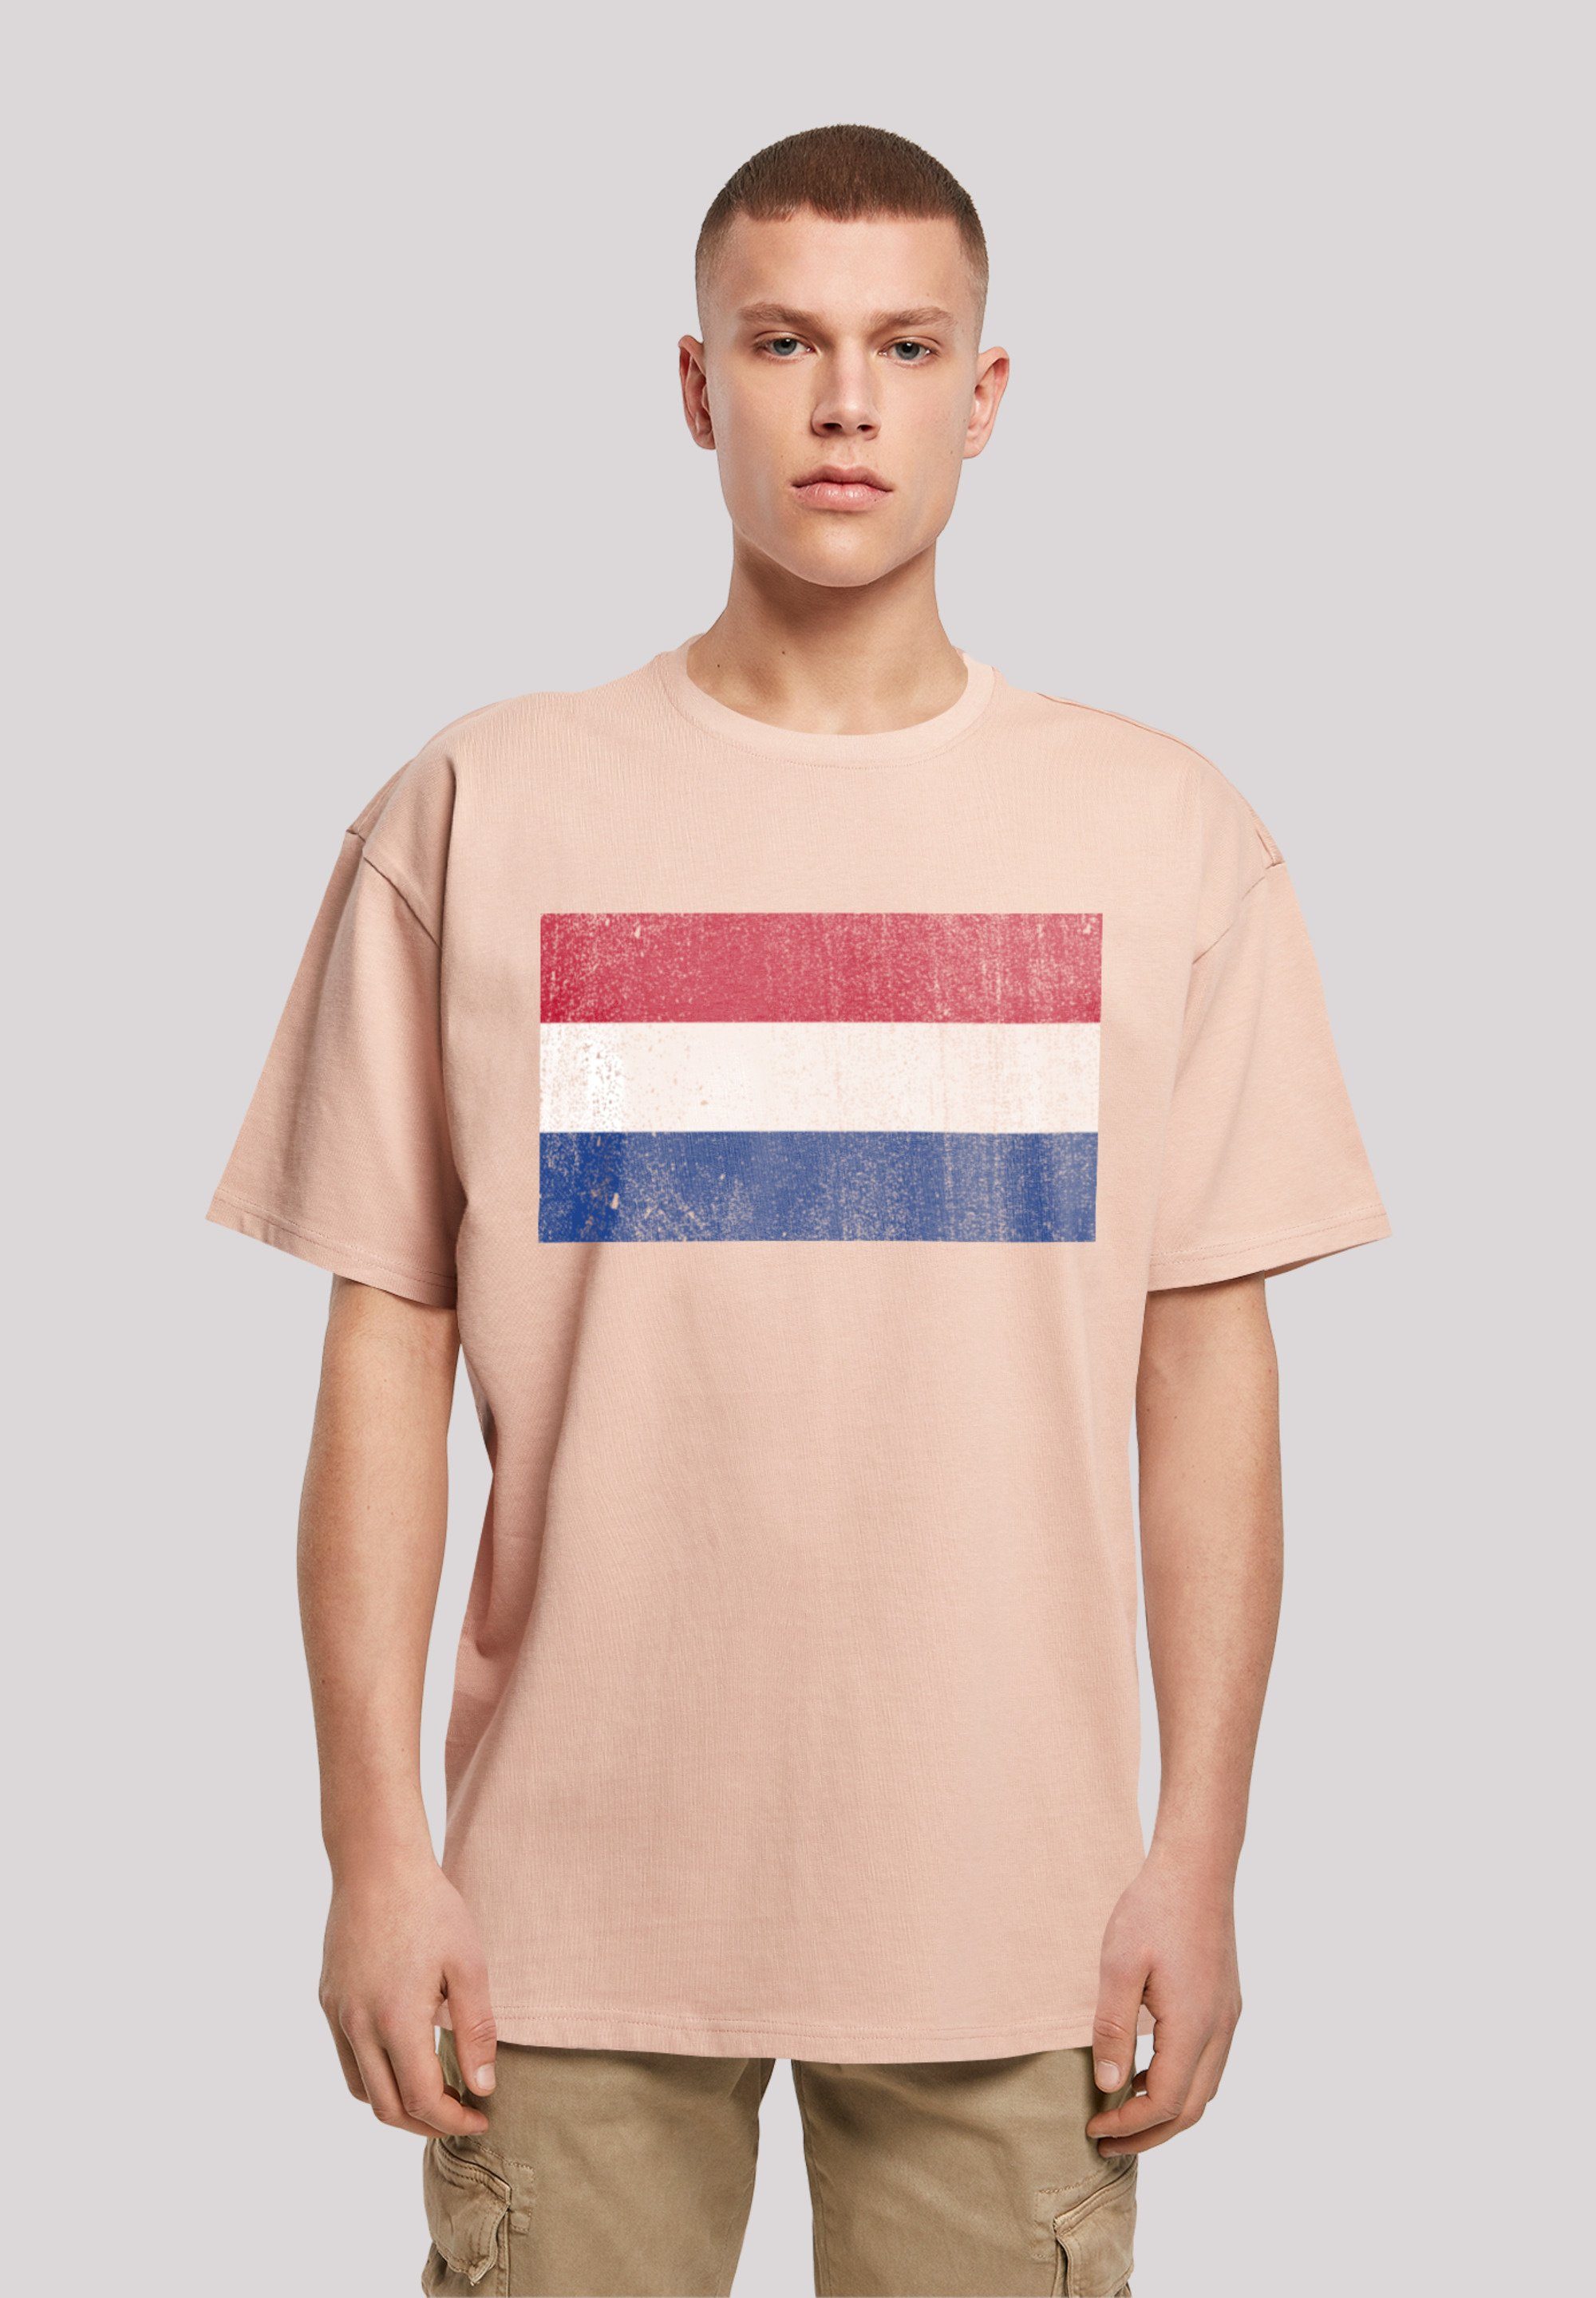 Holland NIederlande Print, Netherlands überschnittene Schultern Passform und F4NT4STIC T-Shirt Flagge Weite distressed